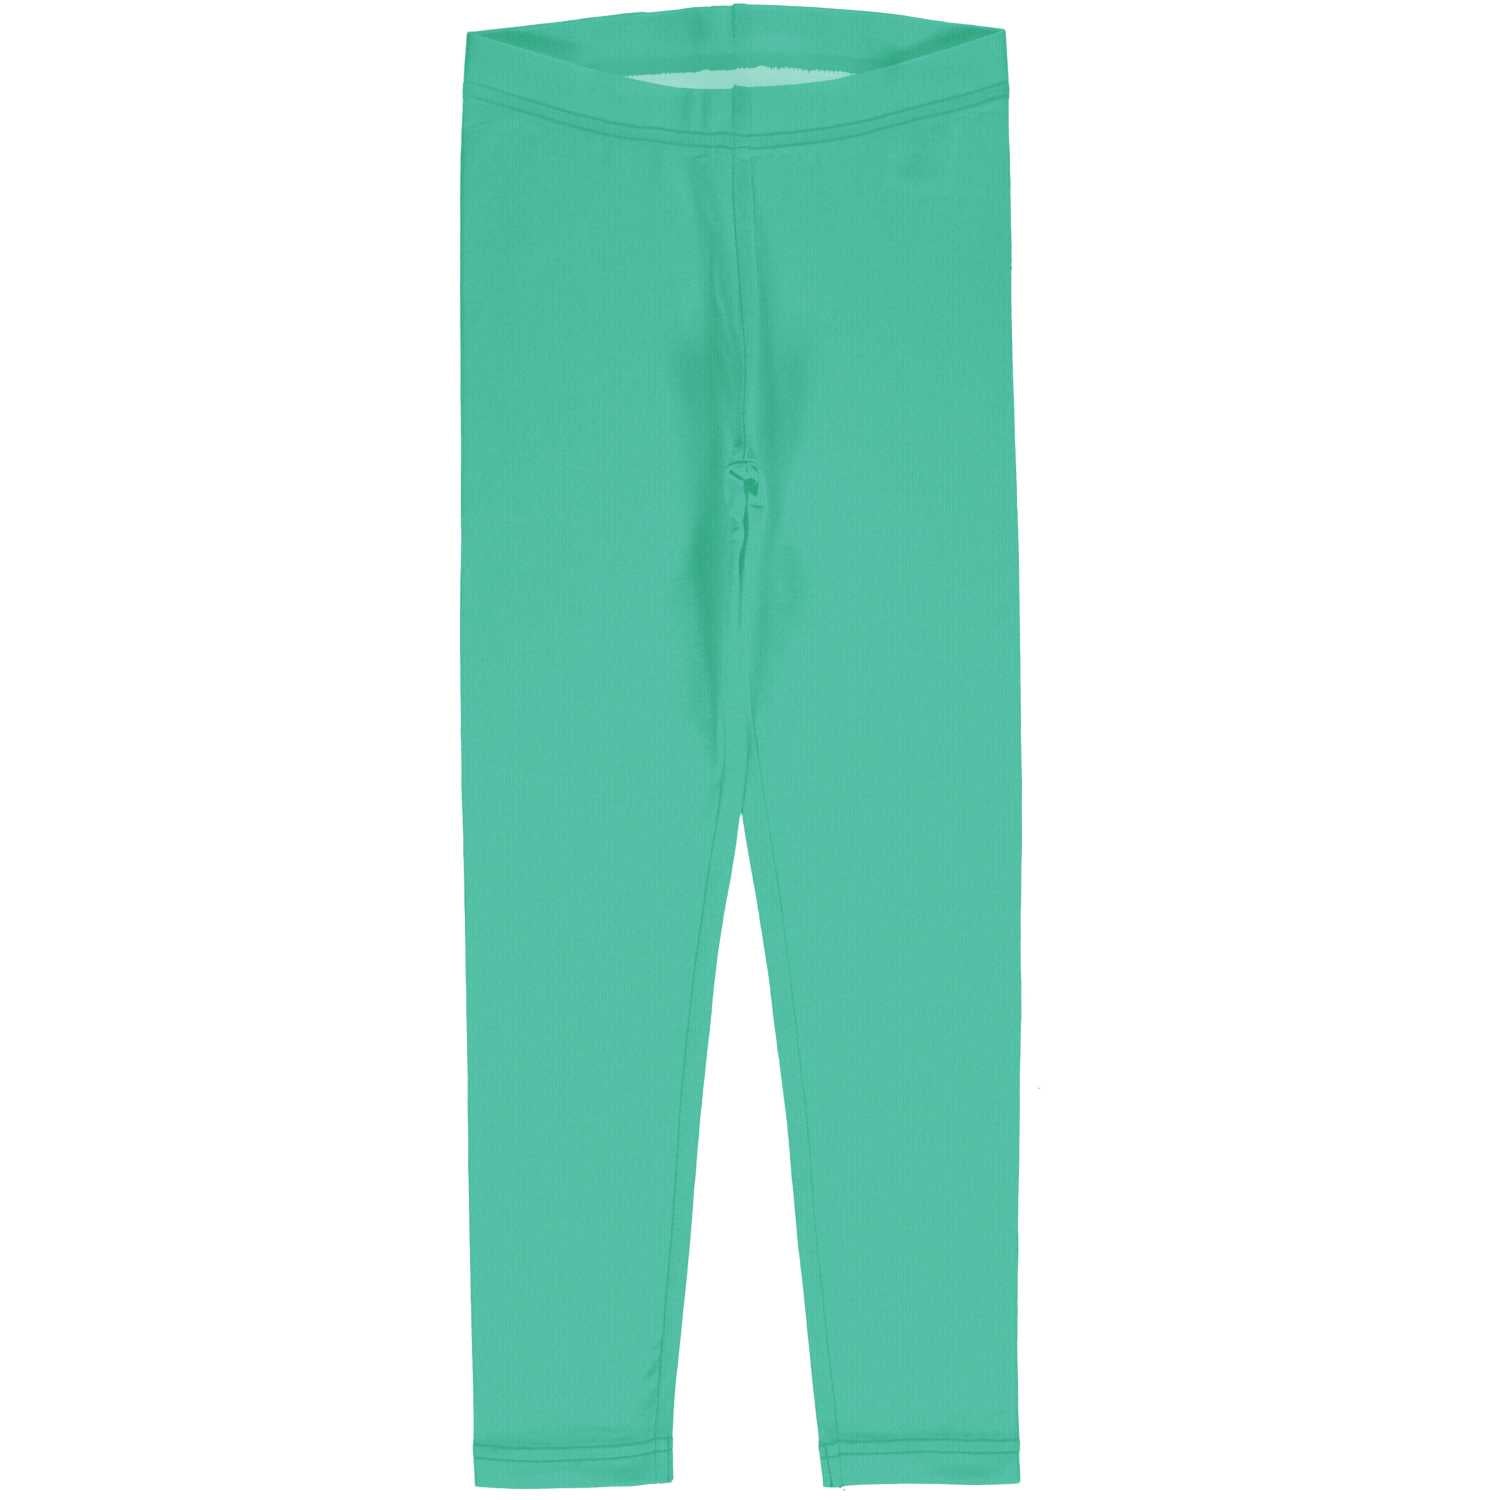 Maxomorra Solid Leggings Dxbas11-Sxbas10 Green Clothing 3-4YRS / Green,5-6YRS / Green,7-8YRS / Green